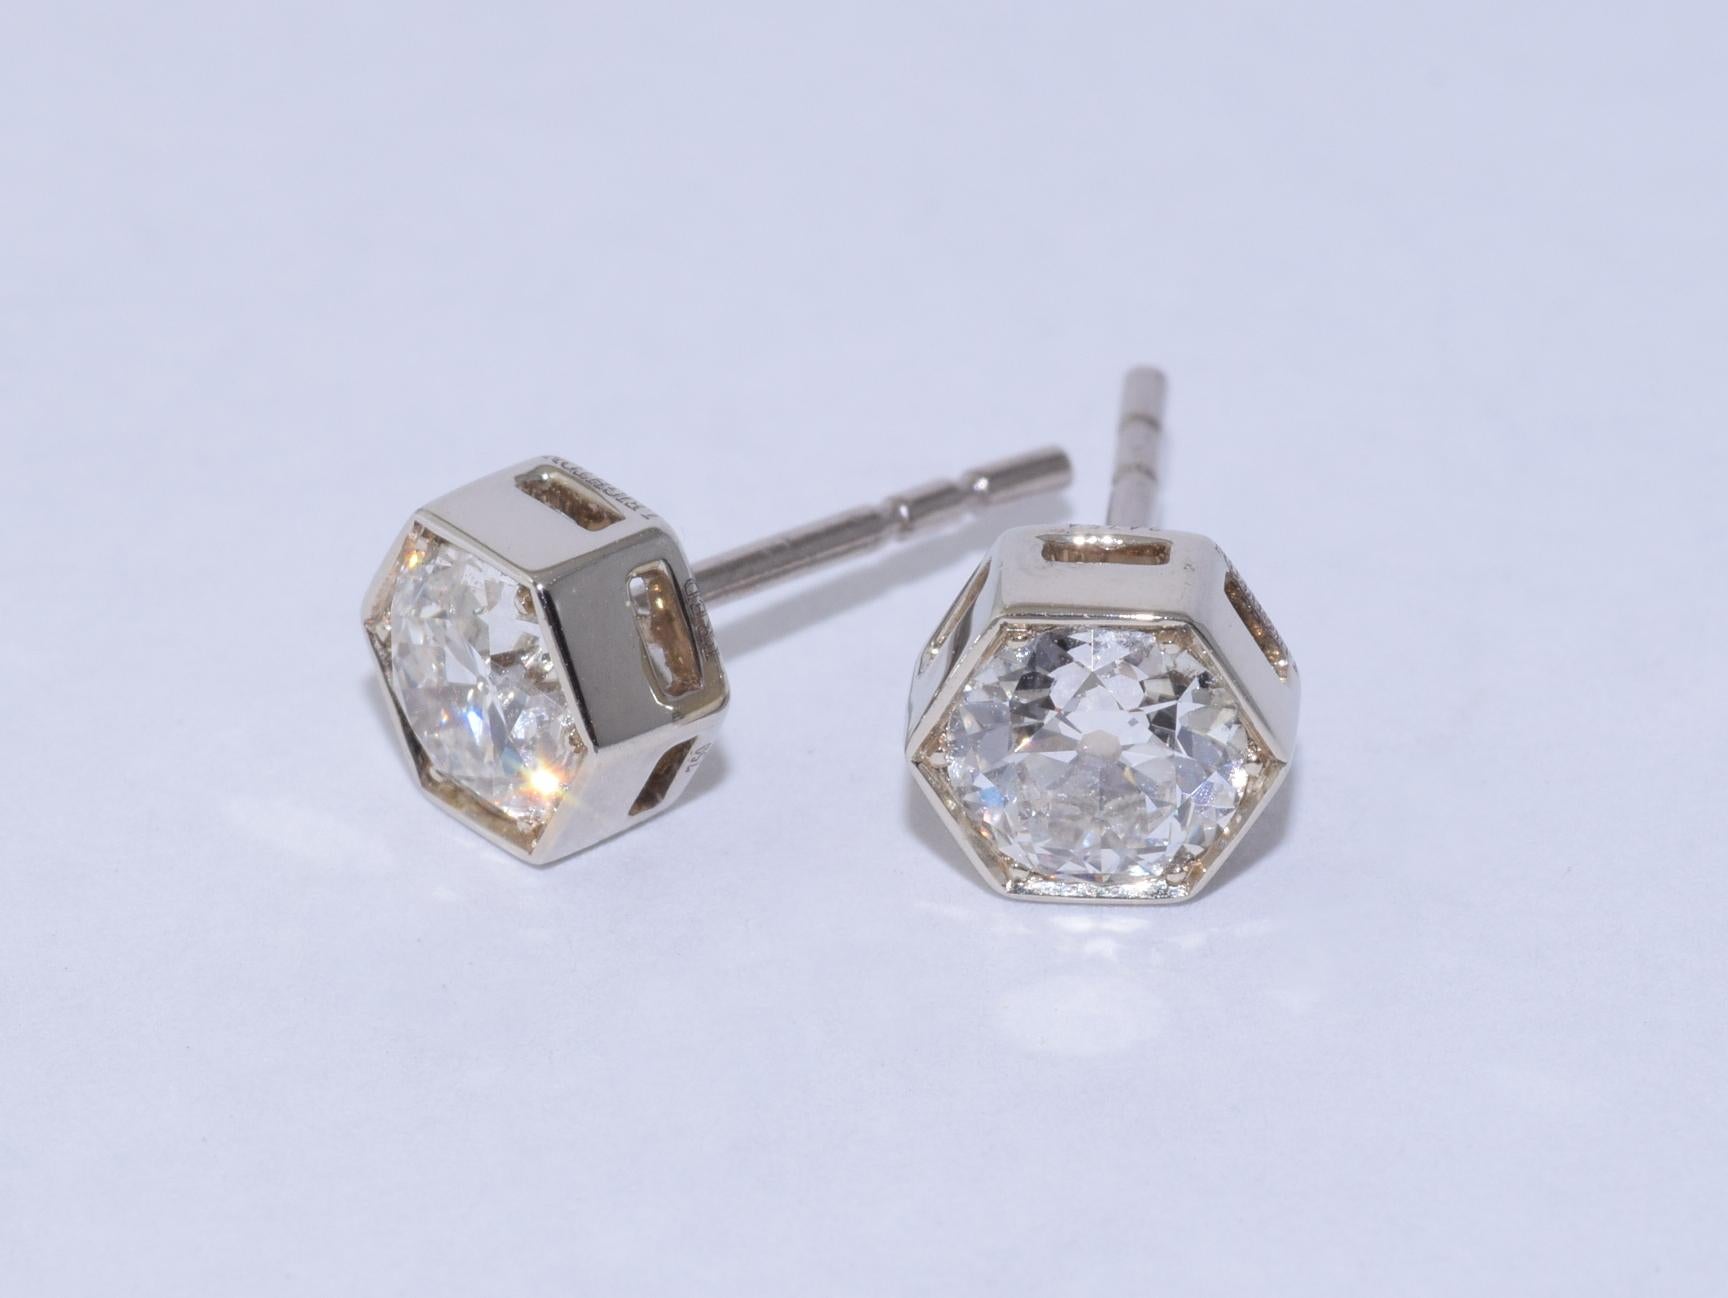 Les boucles d'oreilles sont serties de deux diamants européens anciens totalisant 1,02 carats, de qualité approximative FG/SI, montés dans une monture hexagonale en or blanc 18 carats, signée Fred Leighton. Les boucles d'oreilles mesurent environ